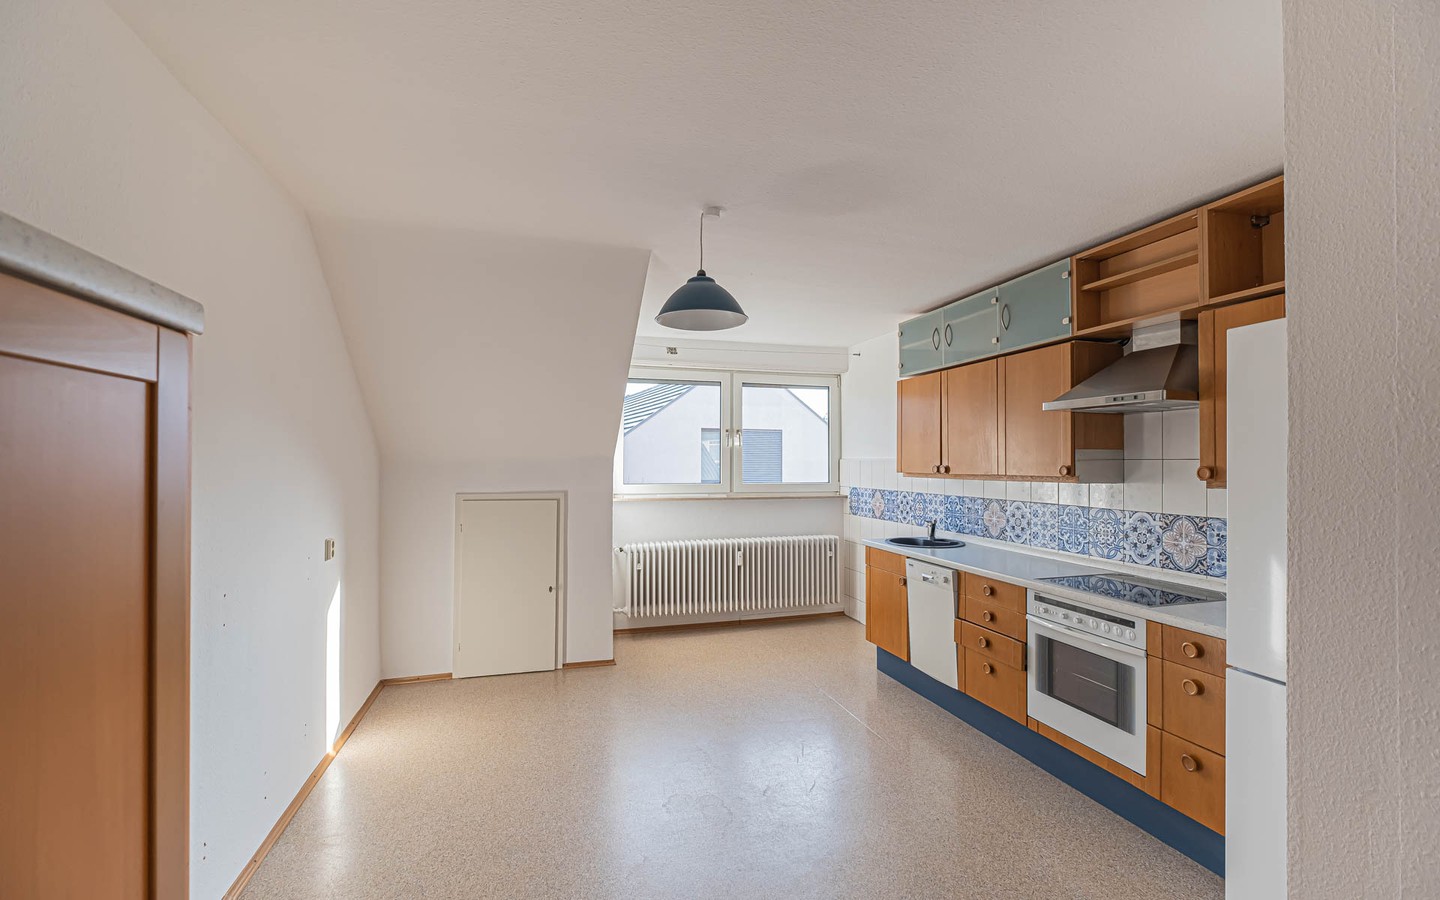 Küche - Bezugsfreie Dachgeschosswohnung mit Balkon in zentraler Lage